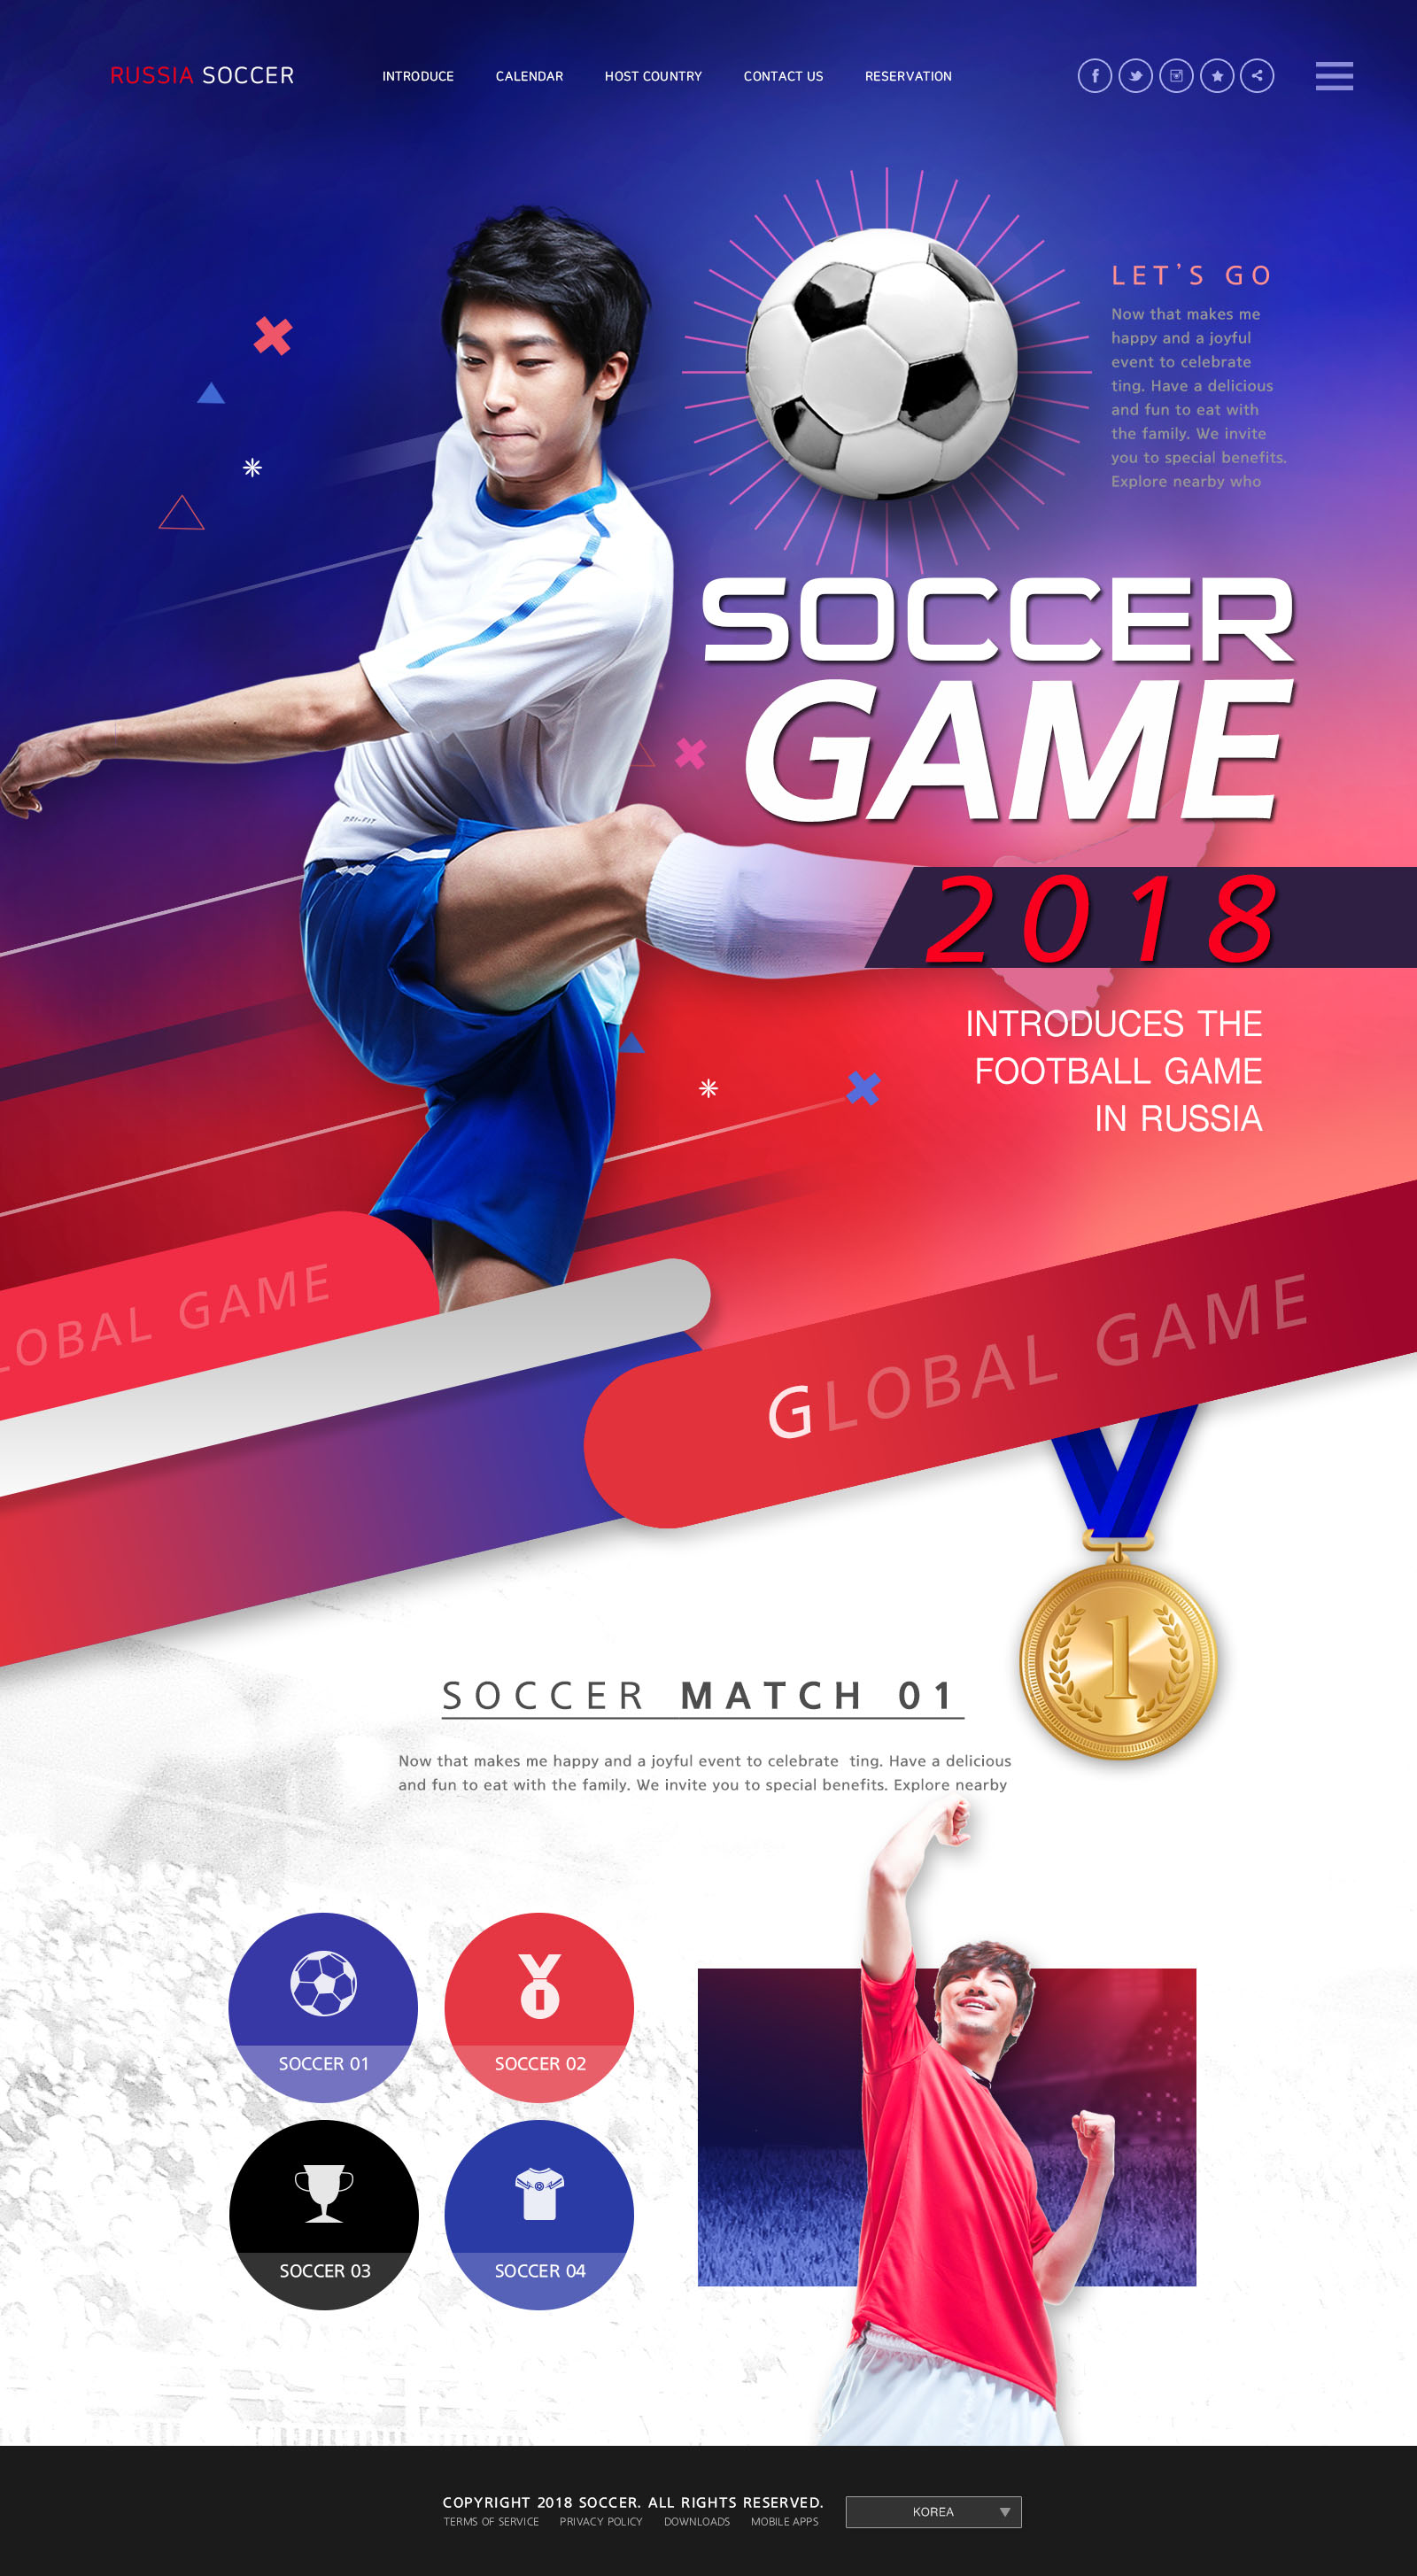 世界杯足球专题广告设计PSD模板第一素材精选(韩国风格)插图(1)